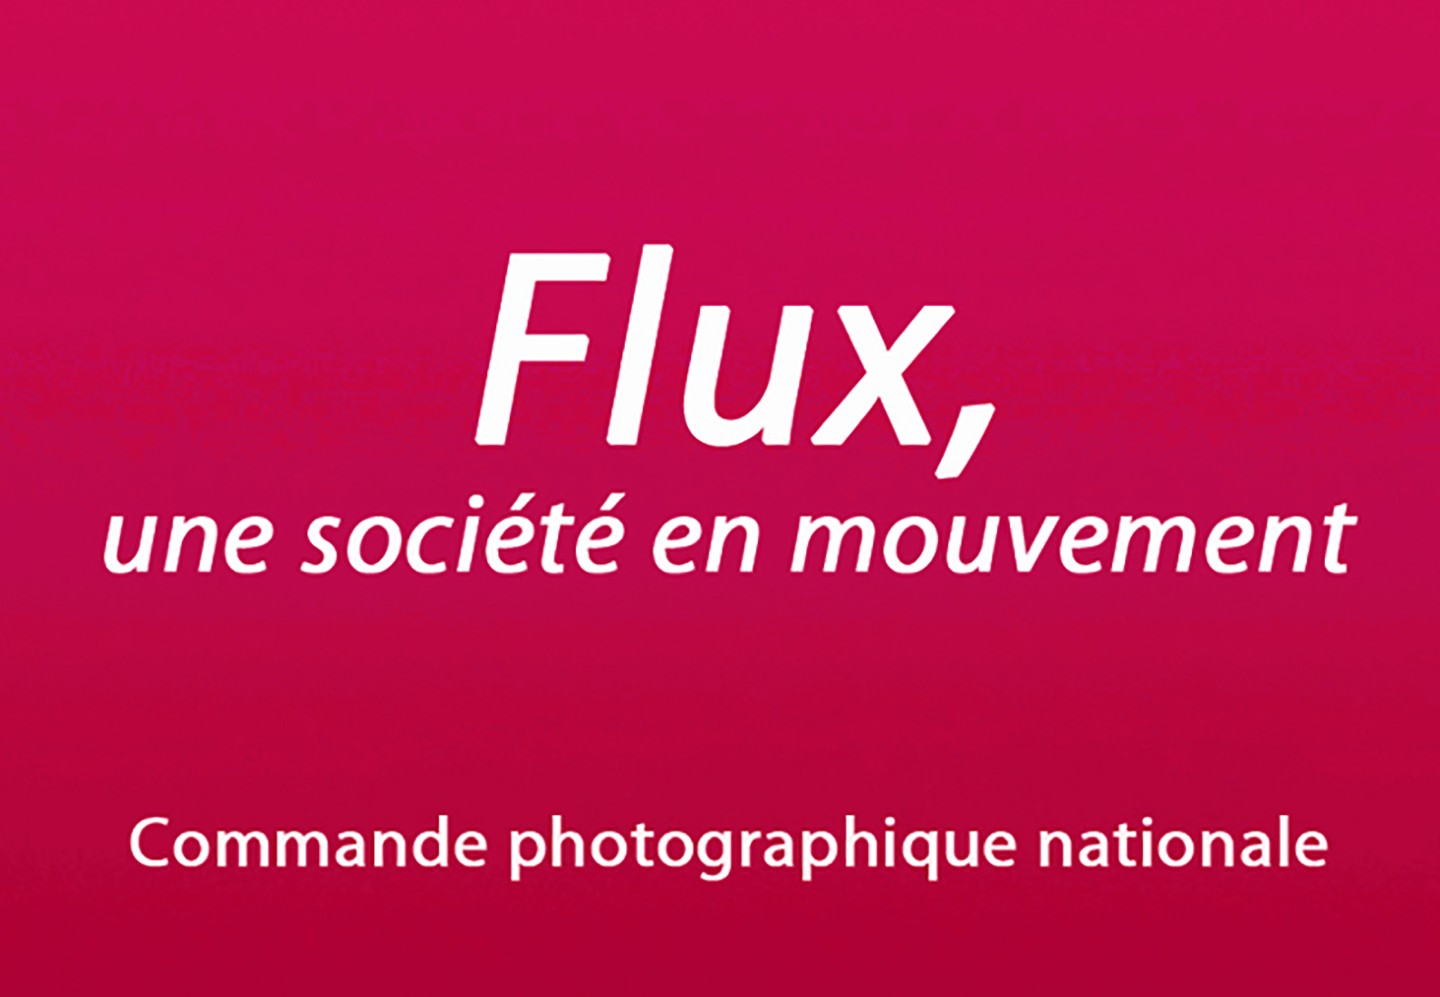 FLUX - Commande photographique nationale 2018, 